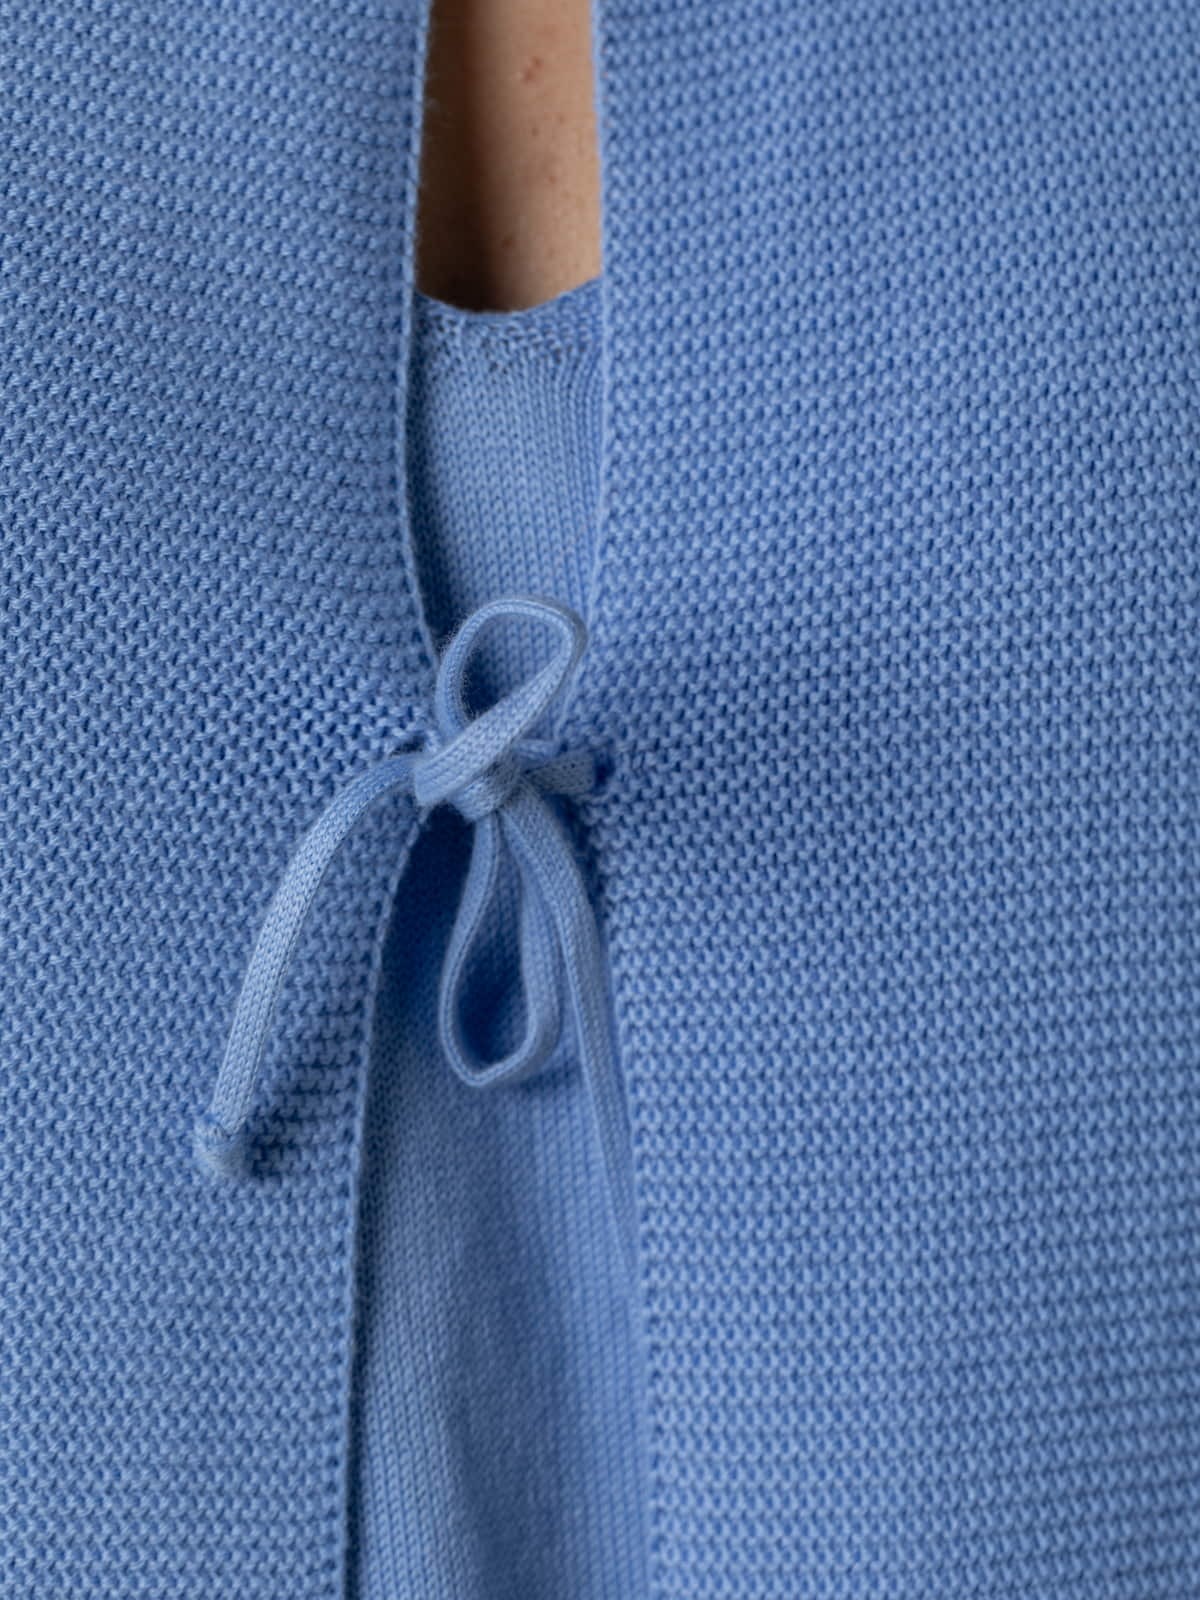 Chaqueta Angela punto algodón 100% color Azul